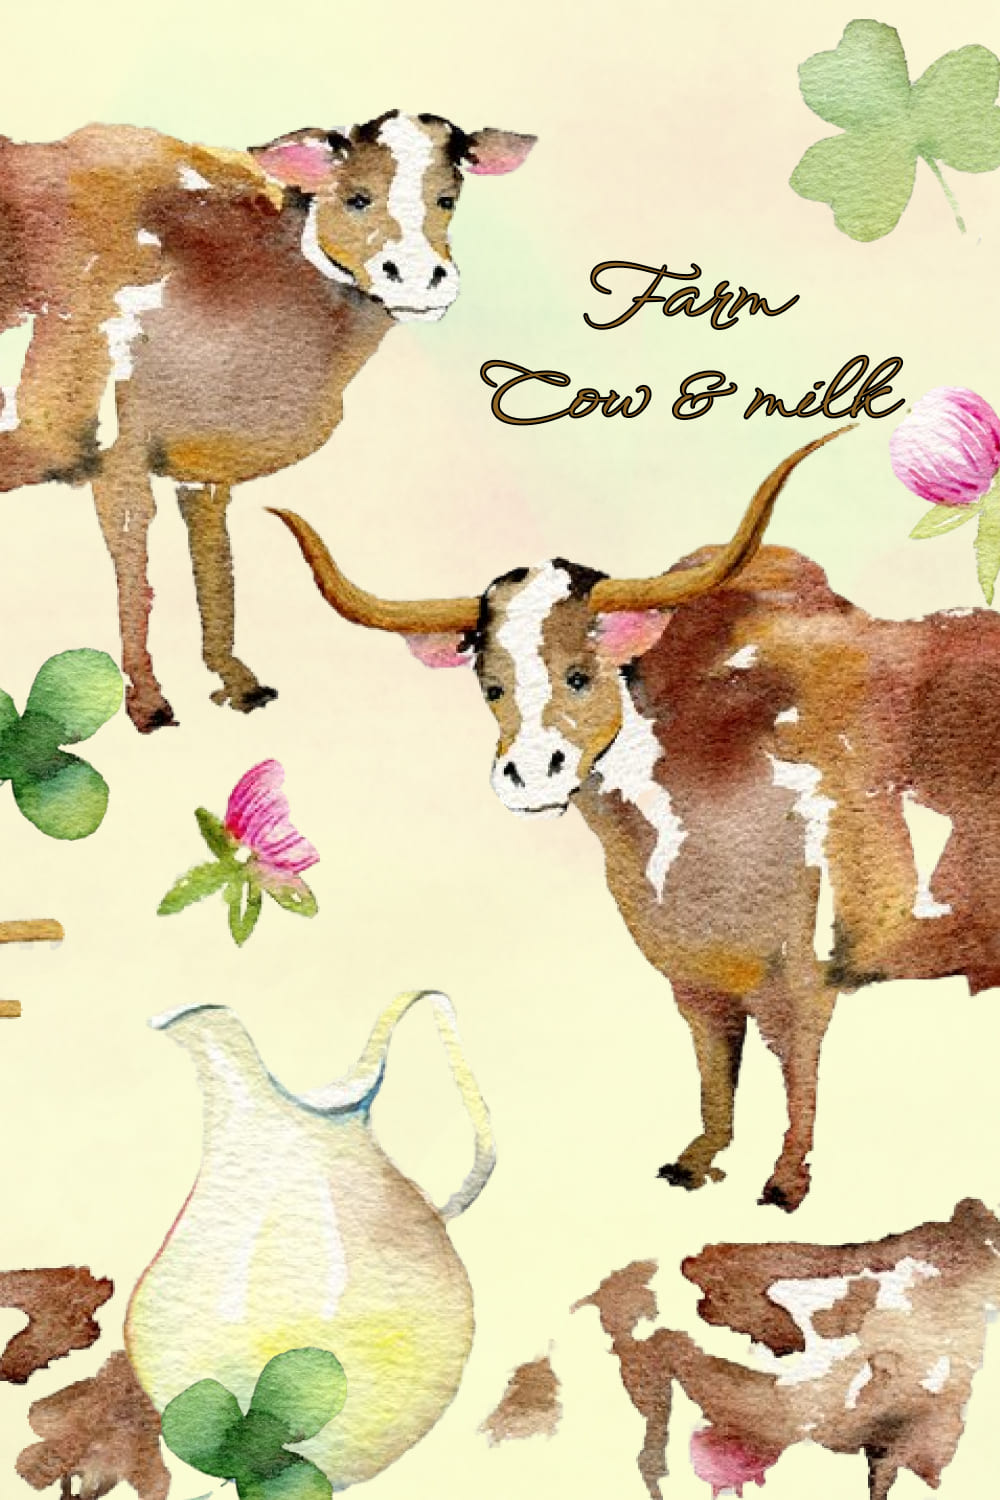 Farm. Cow & Milk. Big Watercolor Set - Pinterest Image Preview.